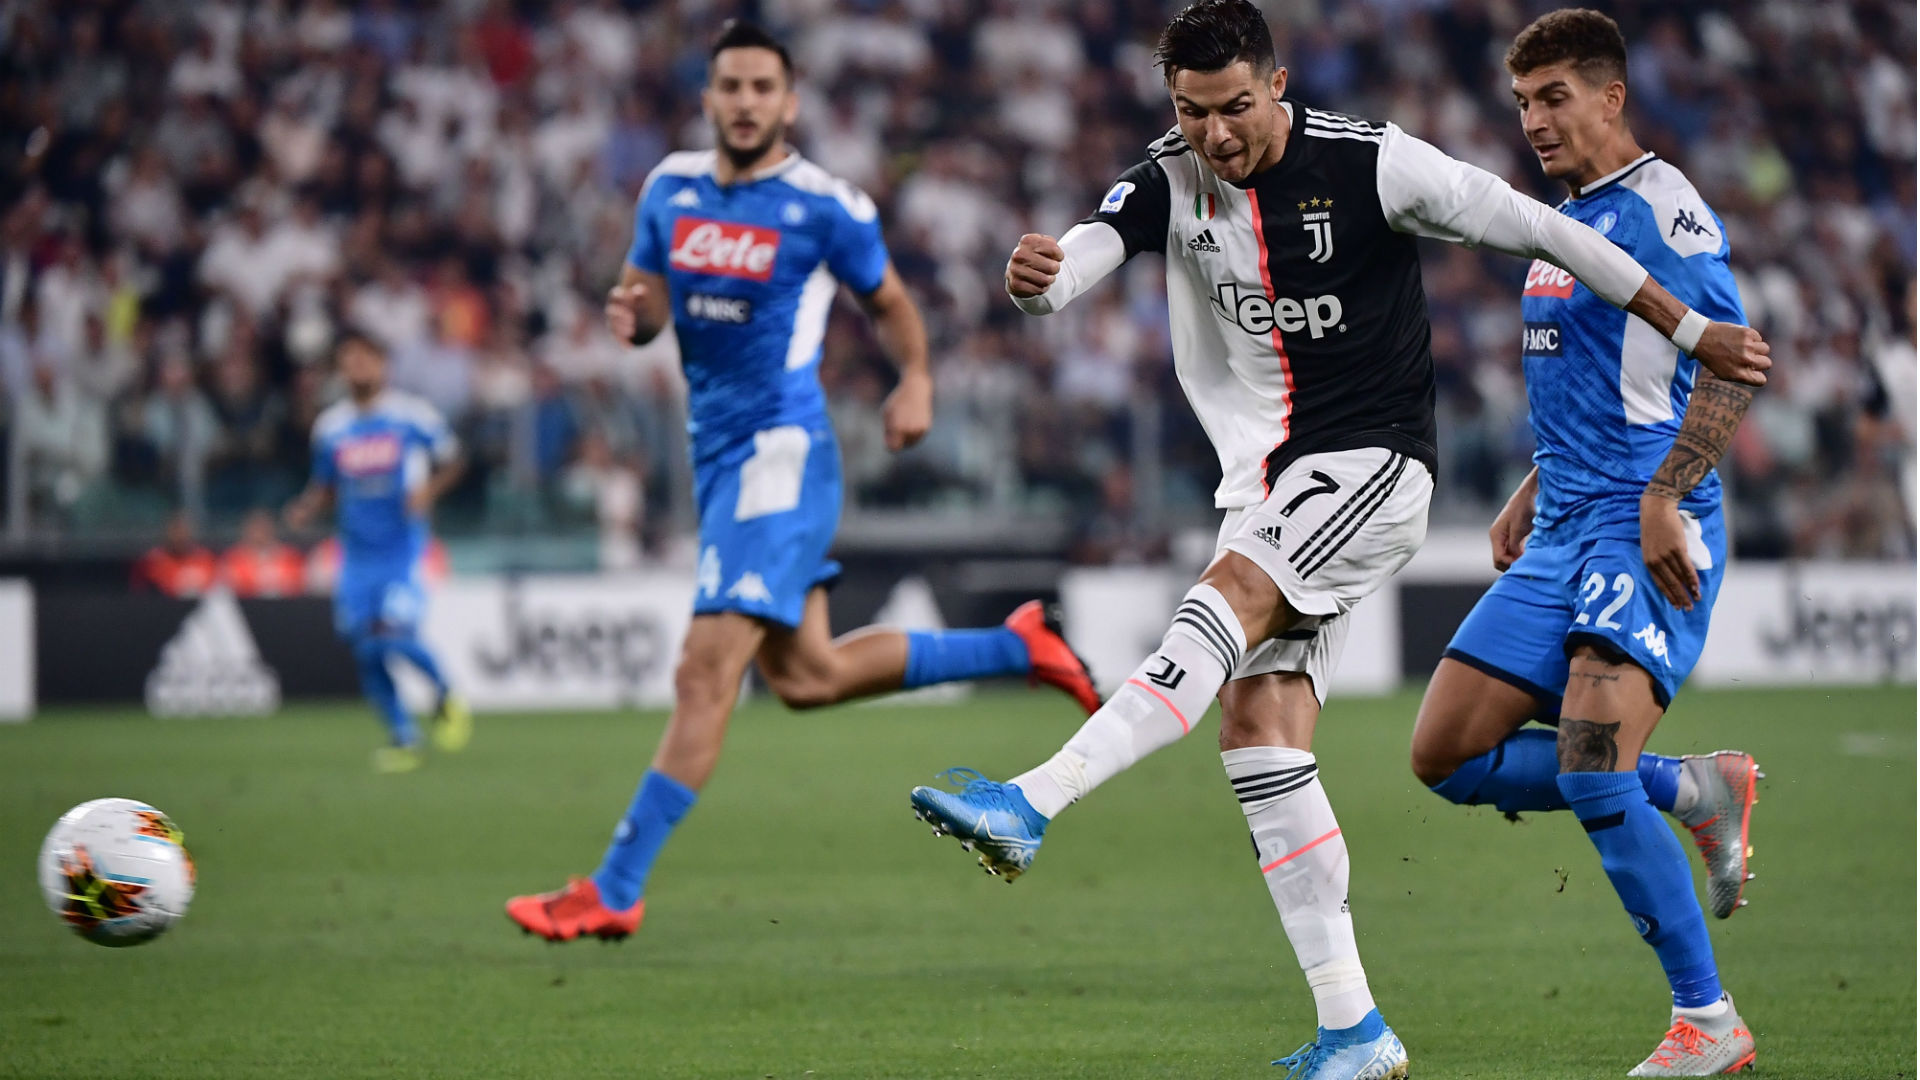 La Ligue retire 3 points à la Juventus, le match contre Naples va se rejouer